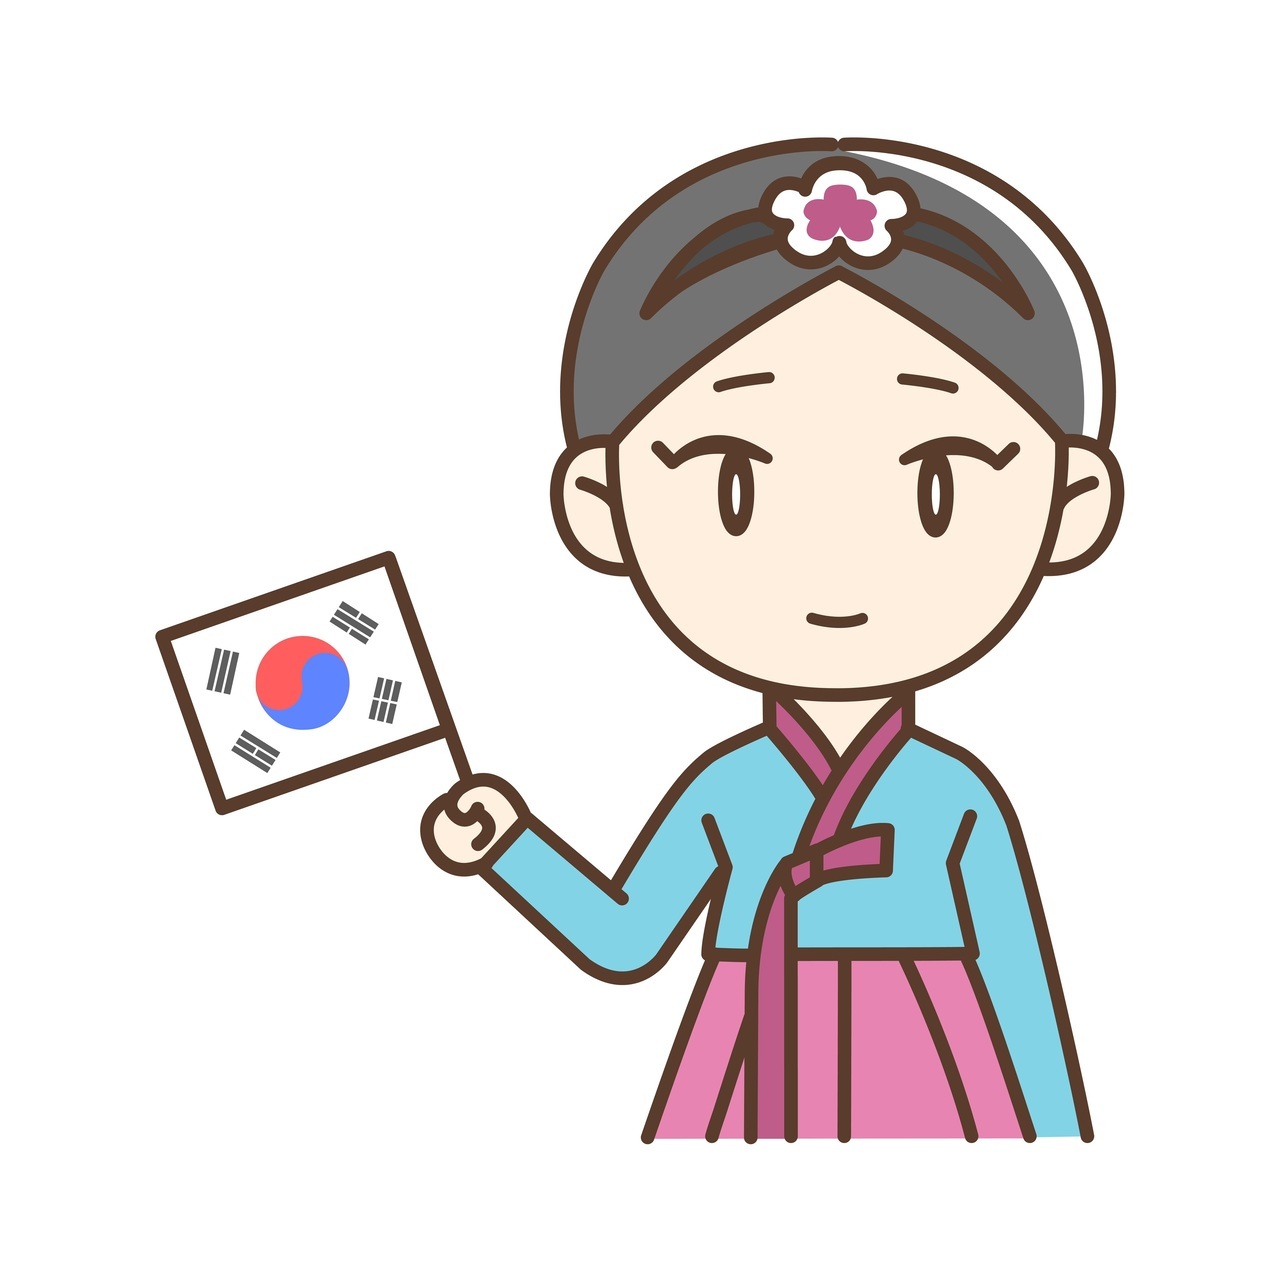 韓国国旗を持ったチマチョゴリの女性イラスト